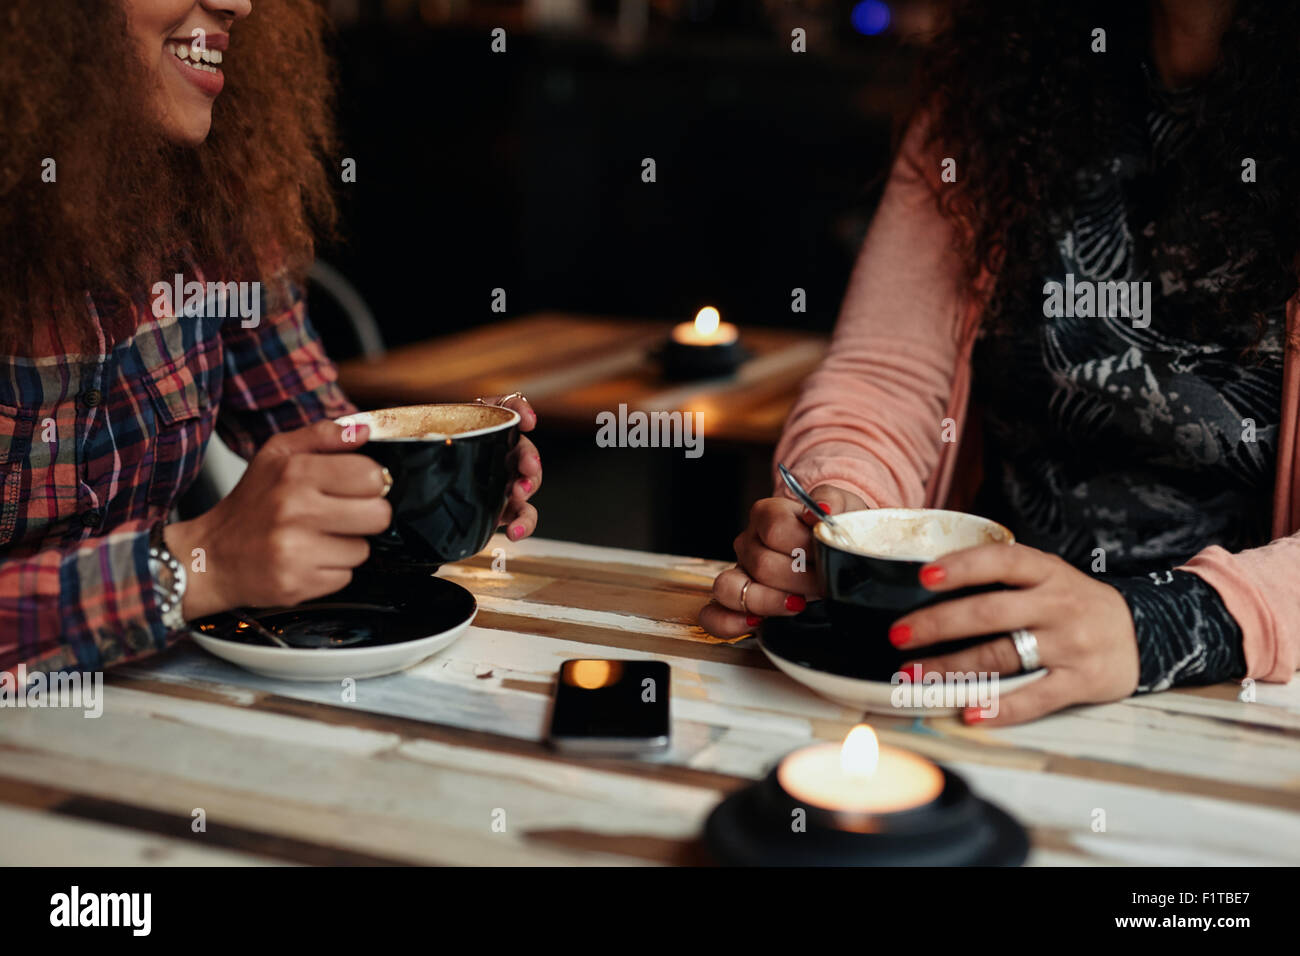 Aufnahme von zwei Frauen sitzen im Restaurant hält Kaffee beschnitten. Freundinnen Kaffee trinken an einem Tisch Stockfoto